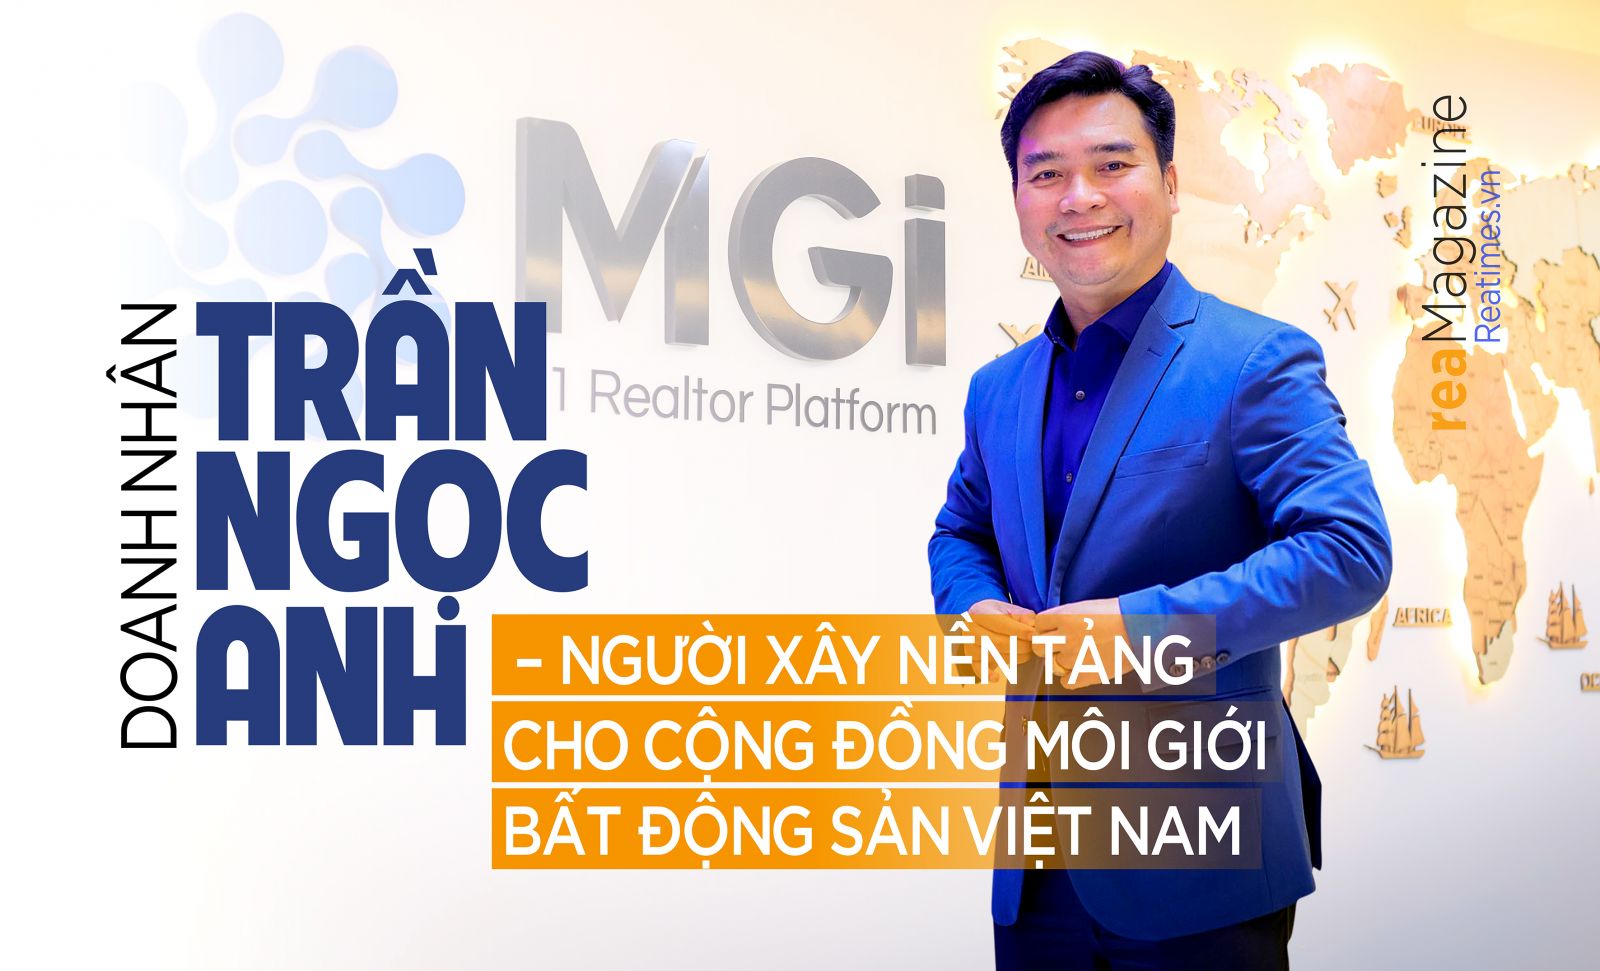 Doanh nhân Trần Ngọc Anh – Người xây nền tảng cho cộng đồng môi giới bất động sản Việt Nam